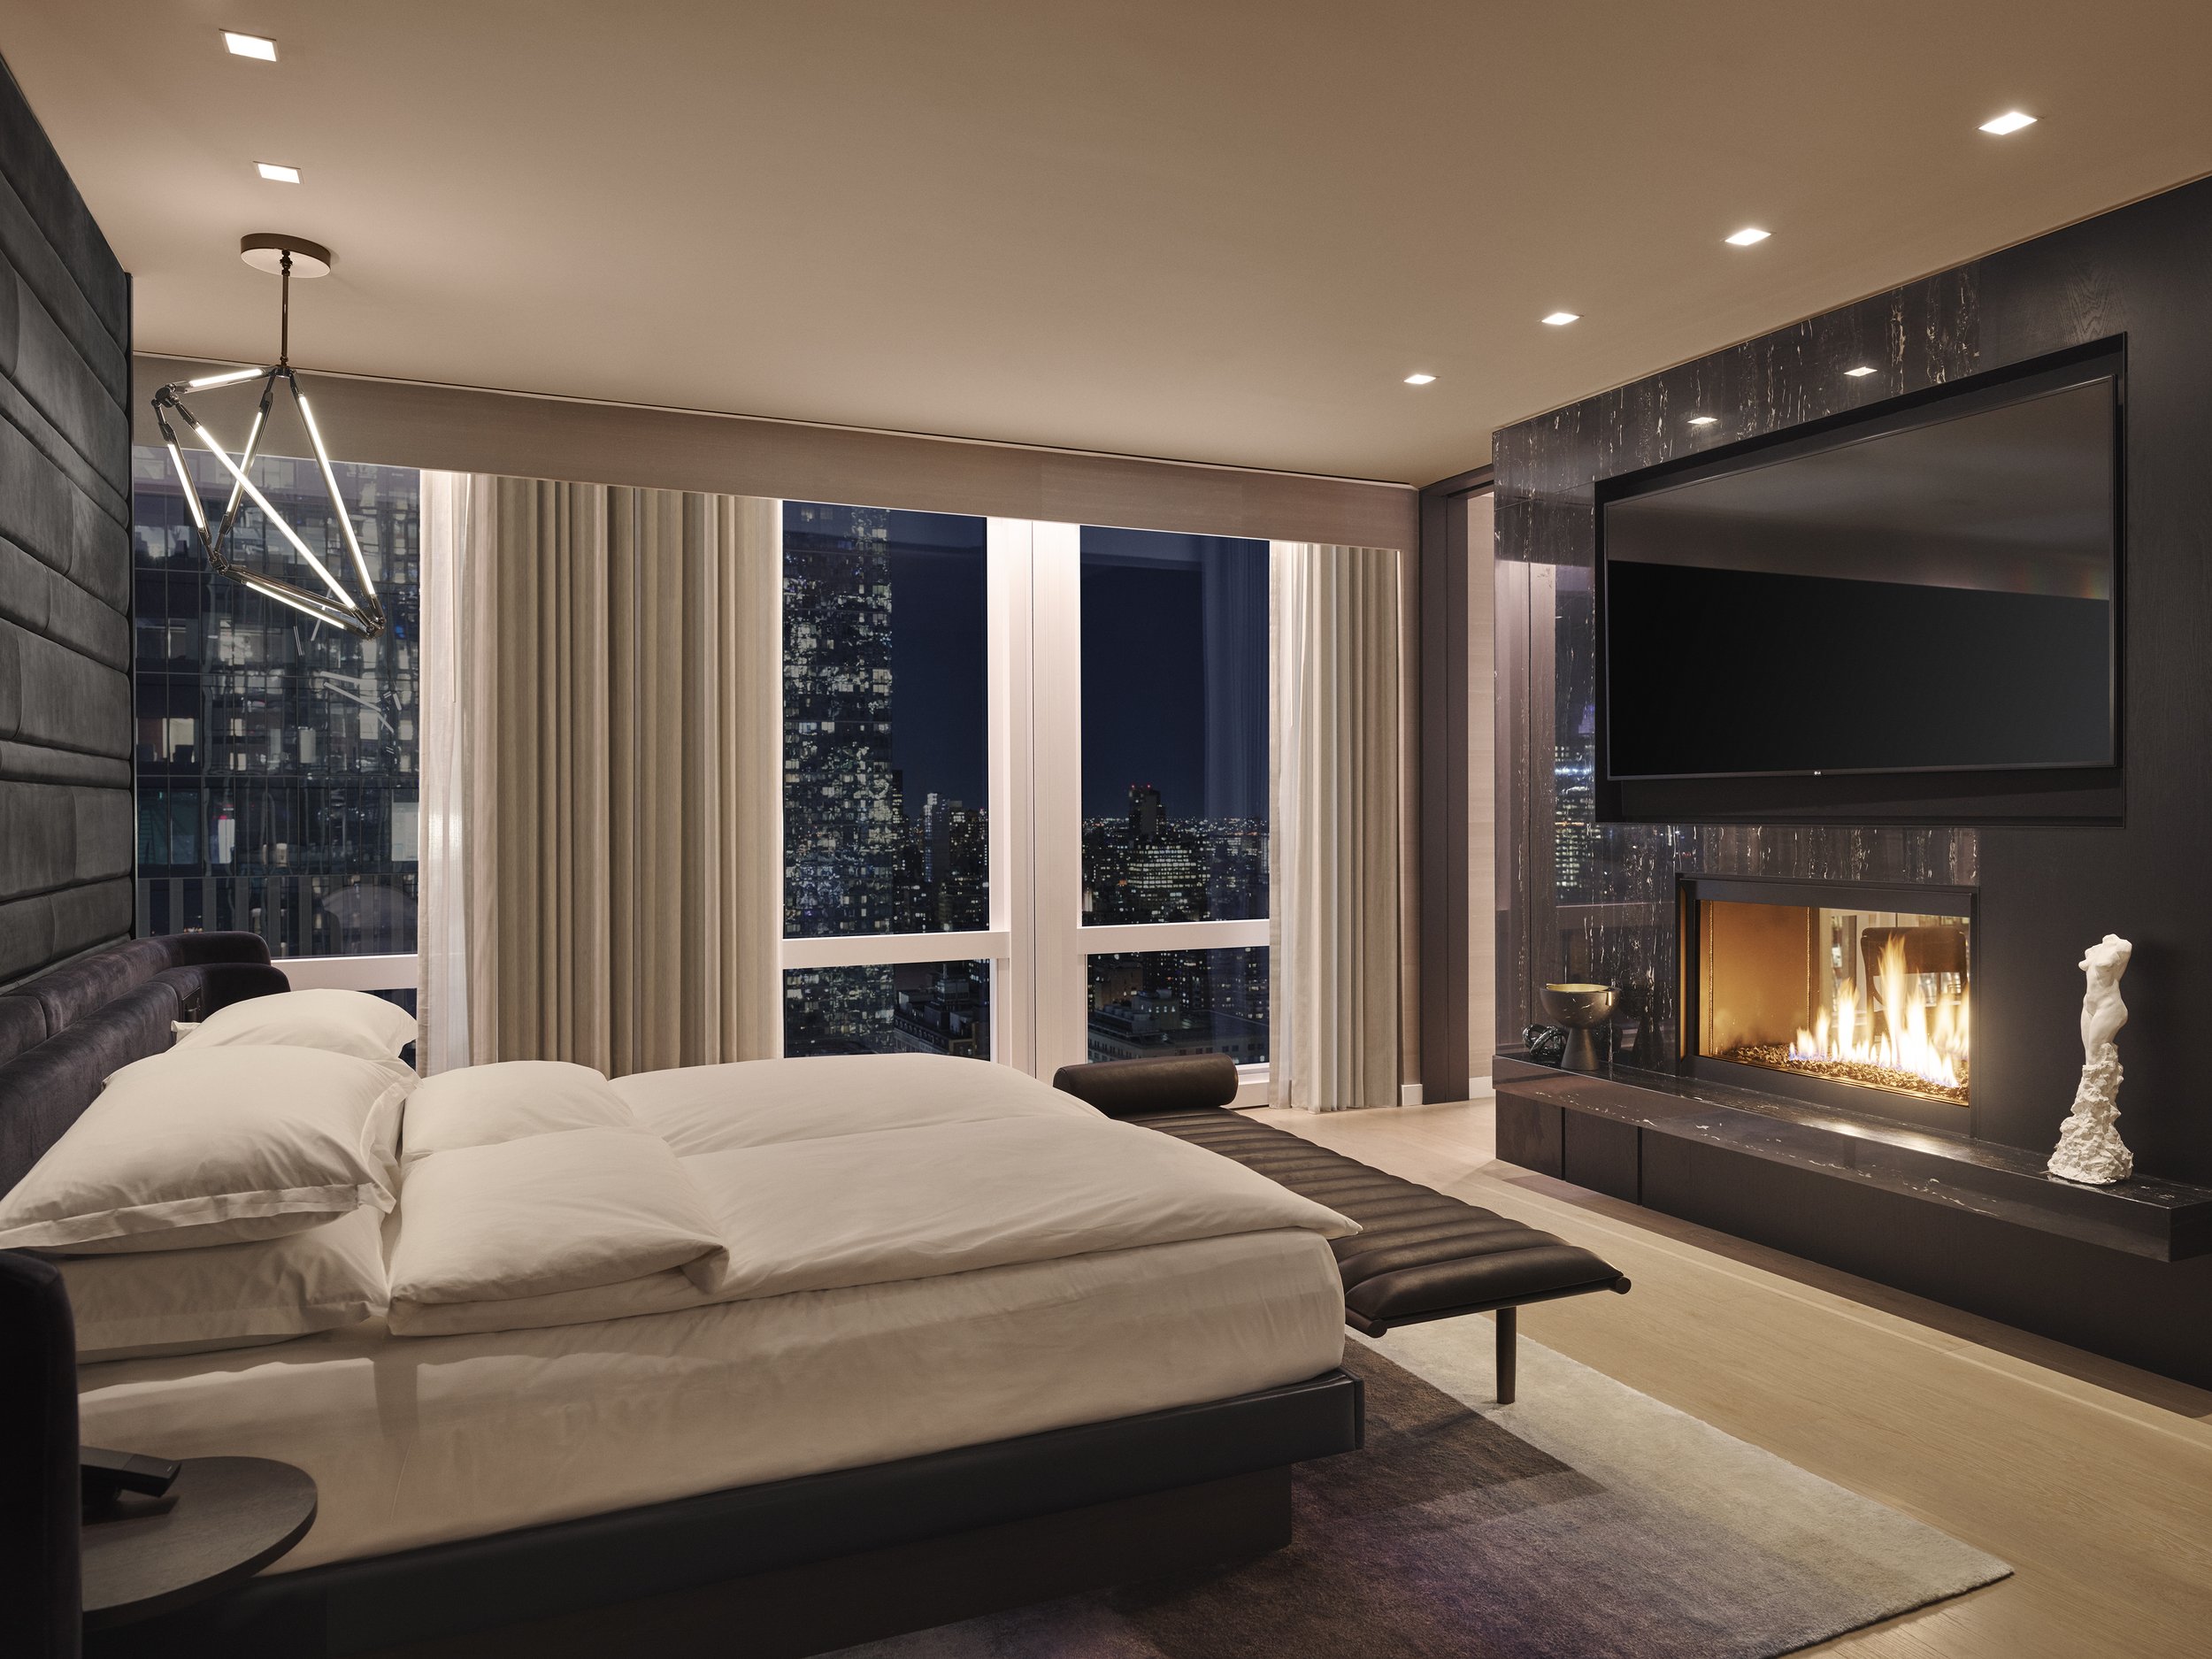 EquinoxSuite-Bedroom-Fireplace.jpg